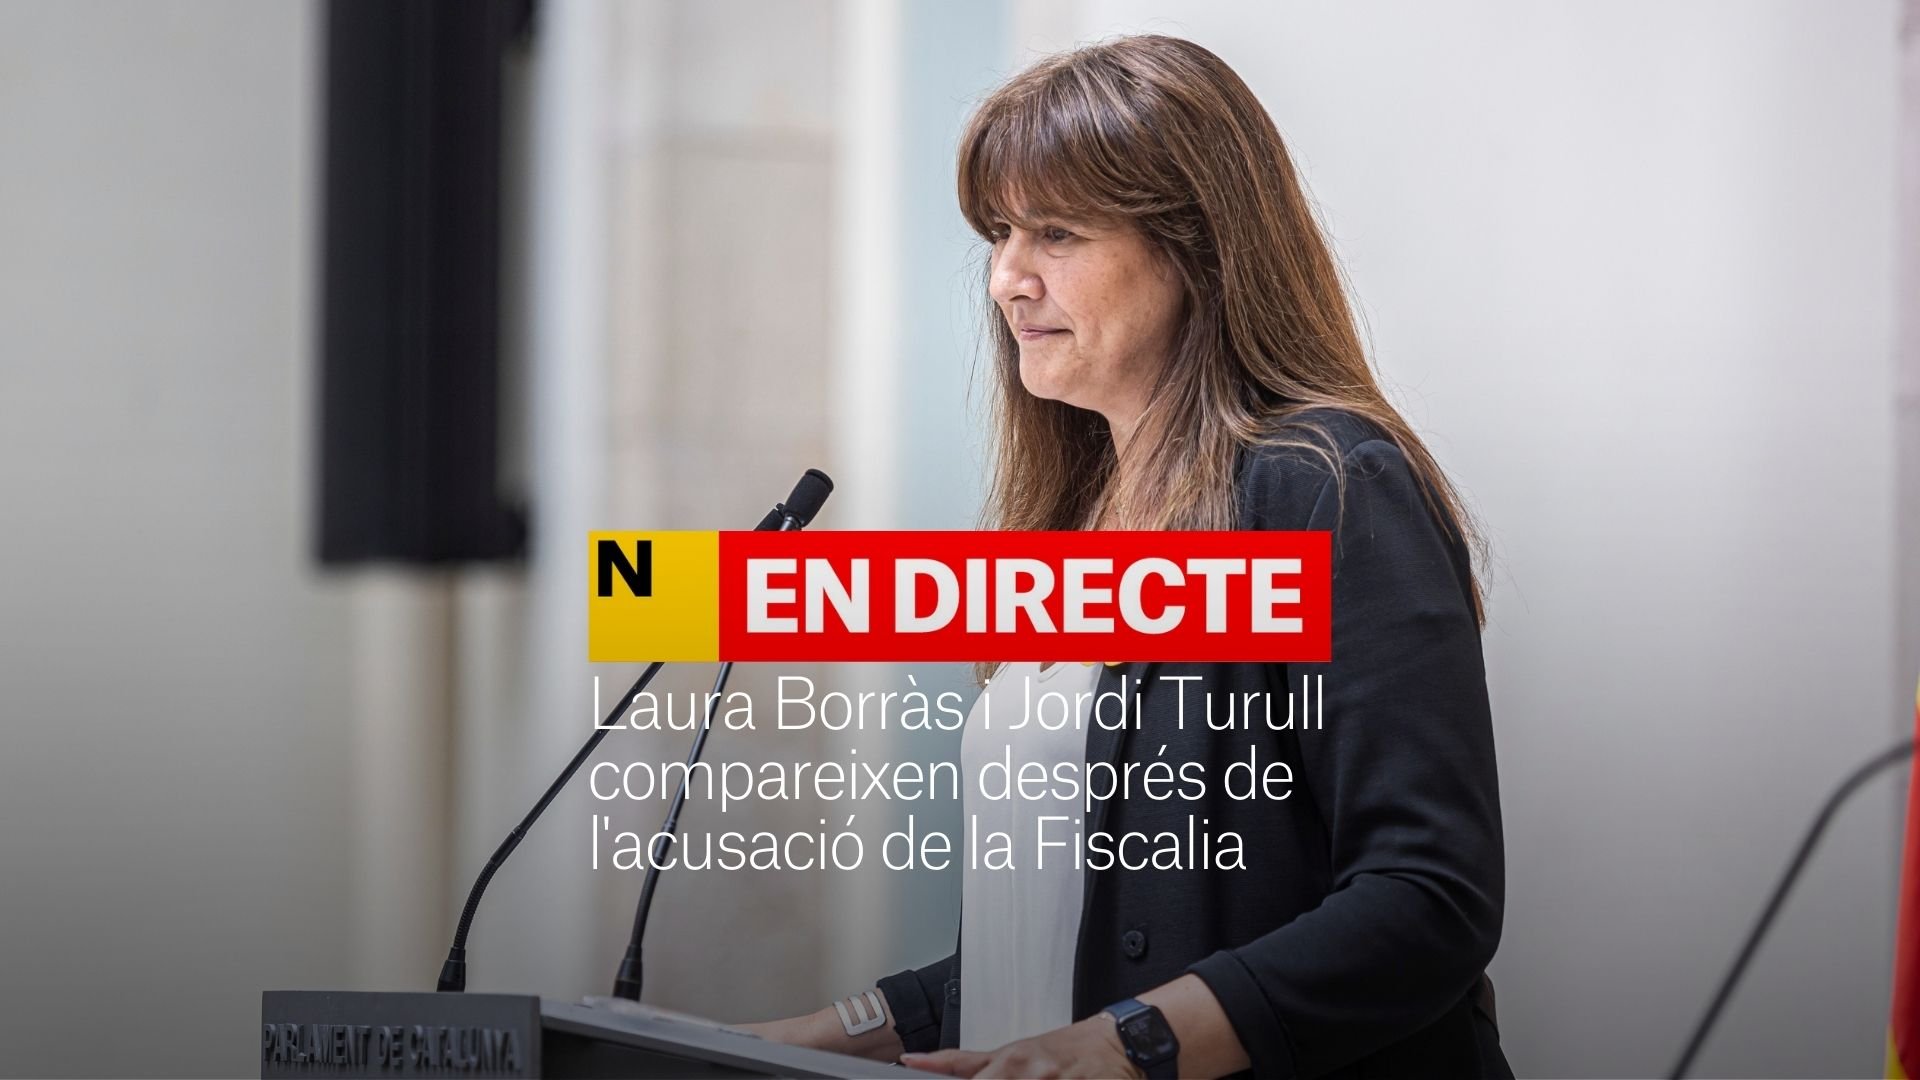 Laura Borràs, després de la petició de presó de la Fiscalia: "No dimitiré del meu càrrec" | DIRECTE